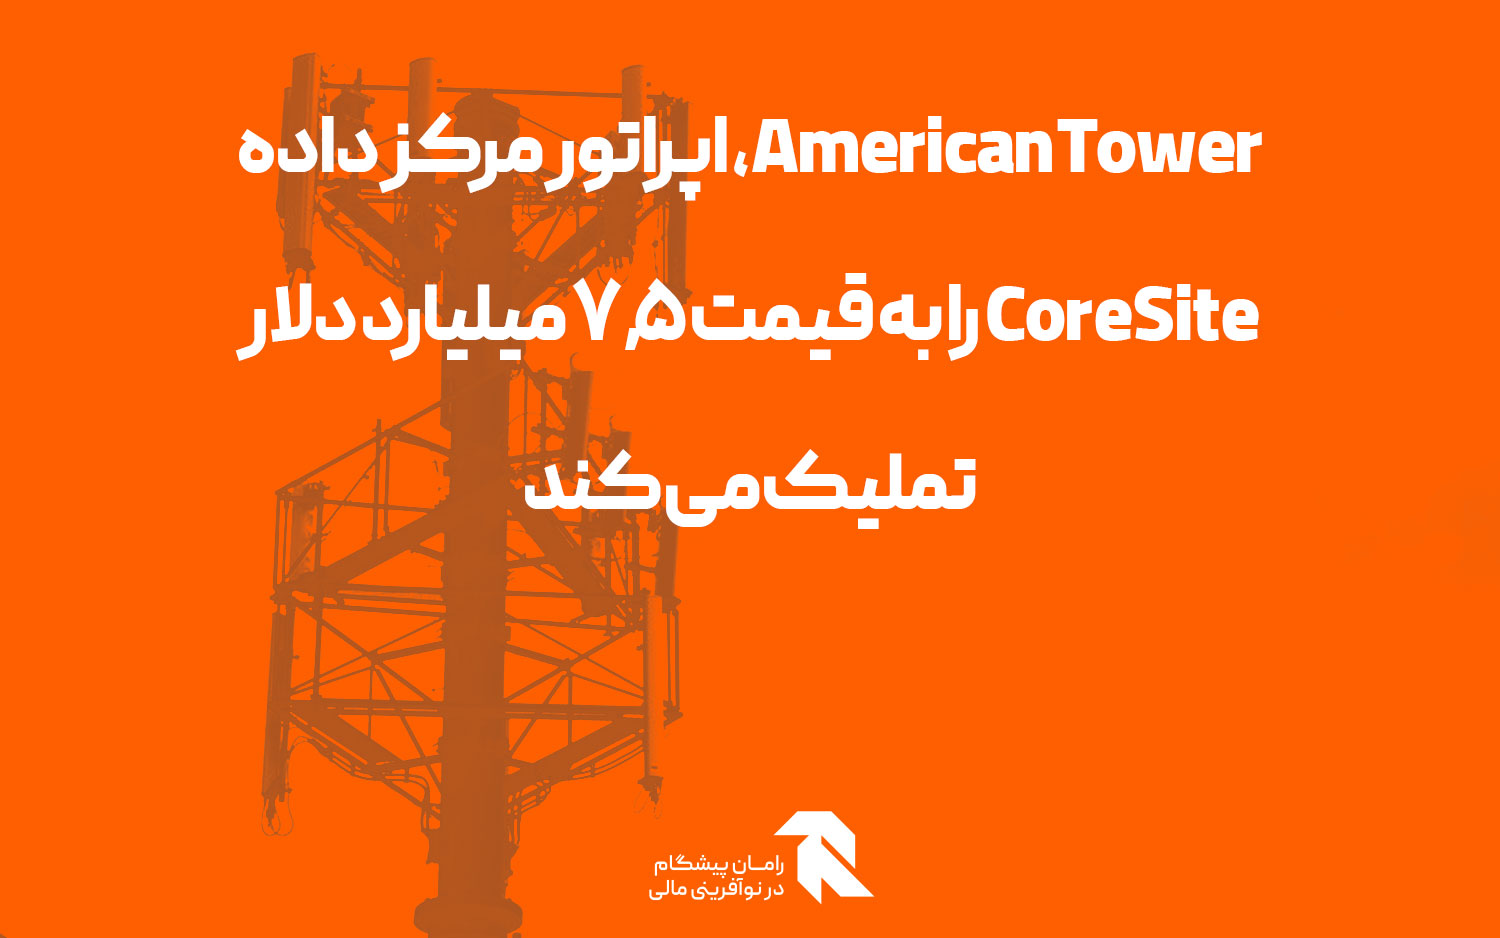 American Tower، اپراتور مرکز داده CoreSite را به قیمت 7.5 میلیارد دلار تملیک می کند